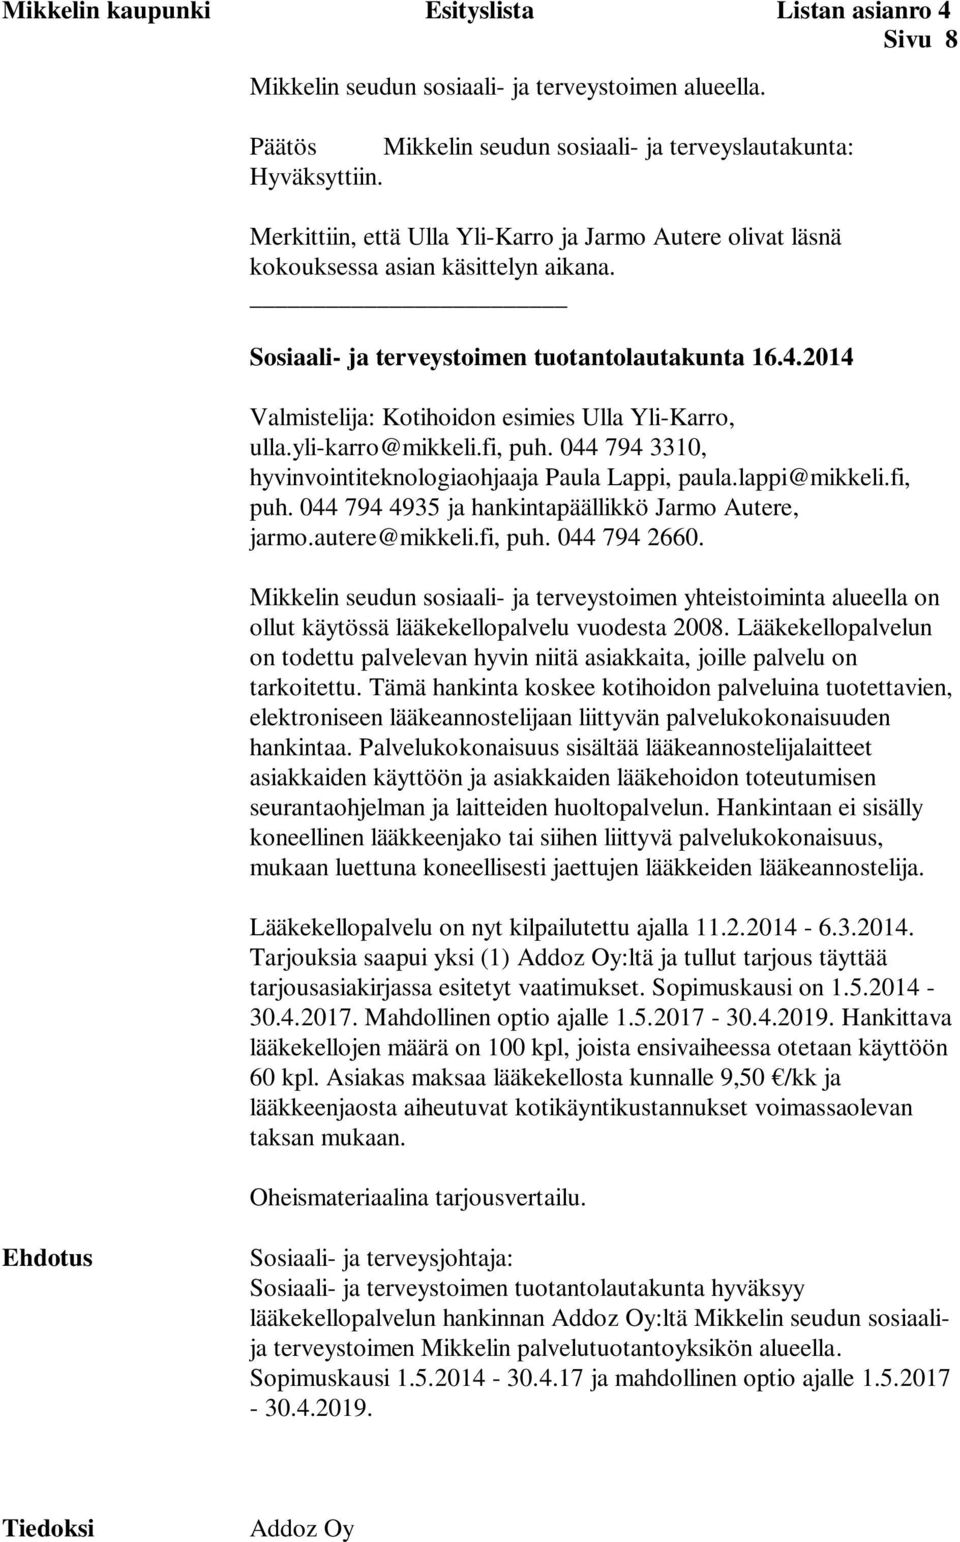 044 794 3310, hyvinvointiteknologiaohjaaja Paula Lappi, paula.lappi@mikkeli.fi, puh. 044 794 4935 ja hankintapäällikkö Jarmo Autere, jarmo.autere@mikkeli.fi, puh. 044 794 2660.